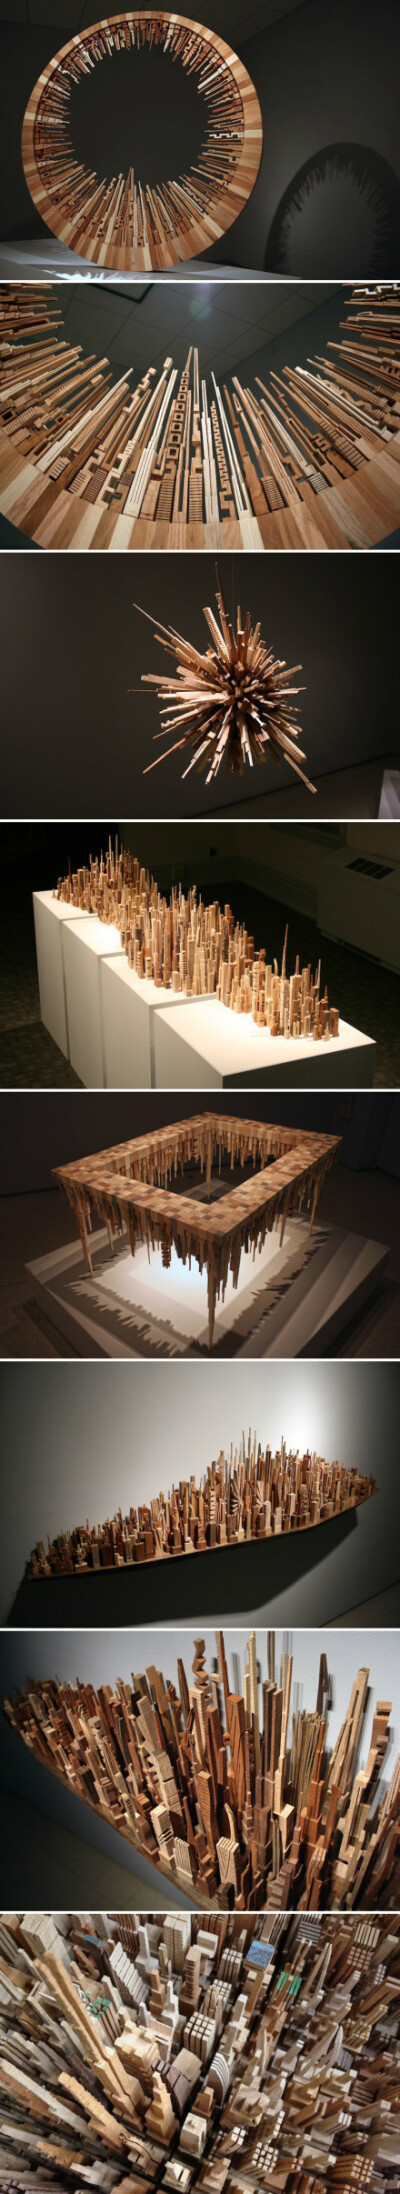 美国艺术家James McNabb用废旧木材创建的微型城市景观装置作品